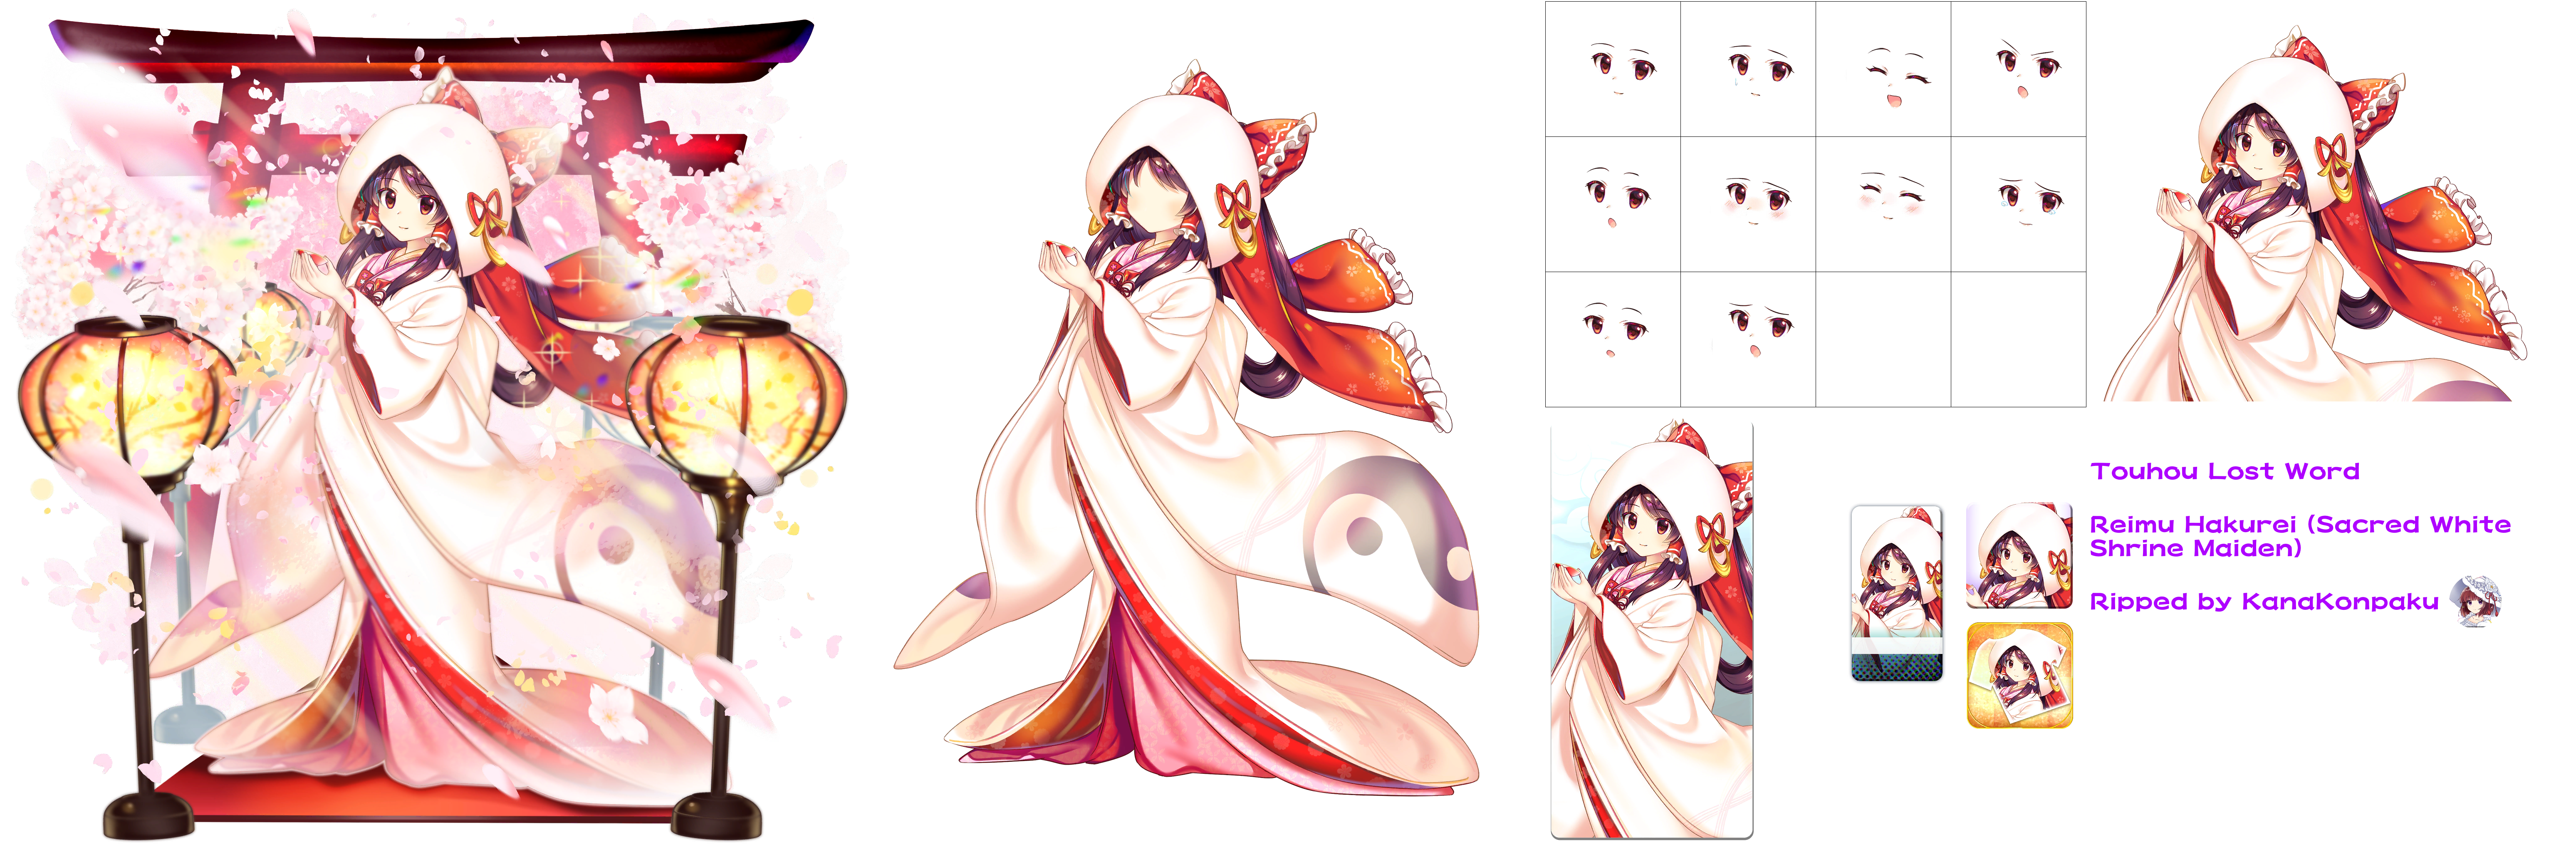 Touhou LostWord - Reimu Hakurei (Sacred White Shrine Maiden)